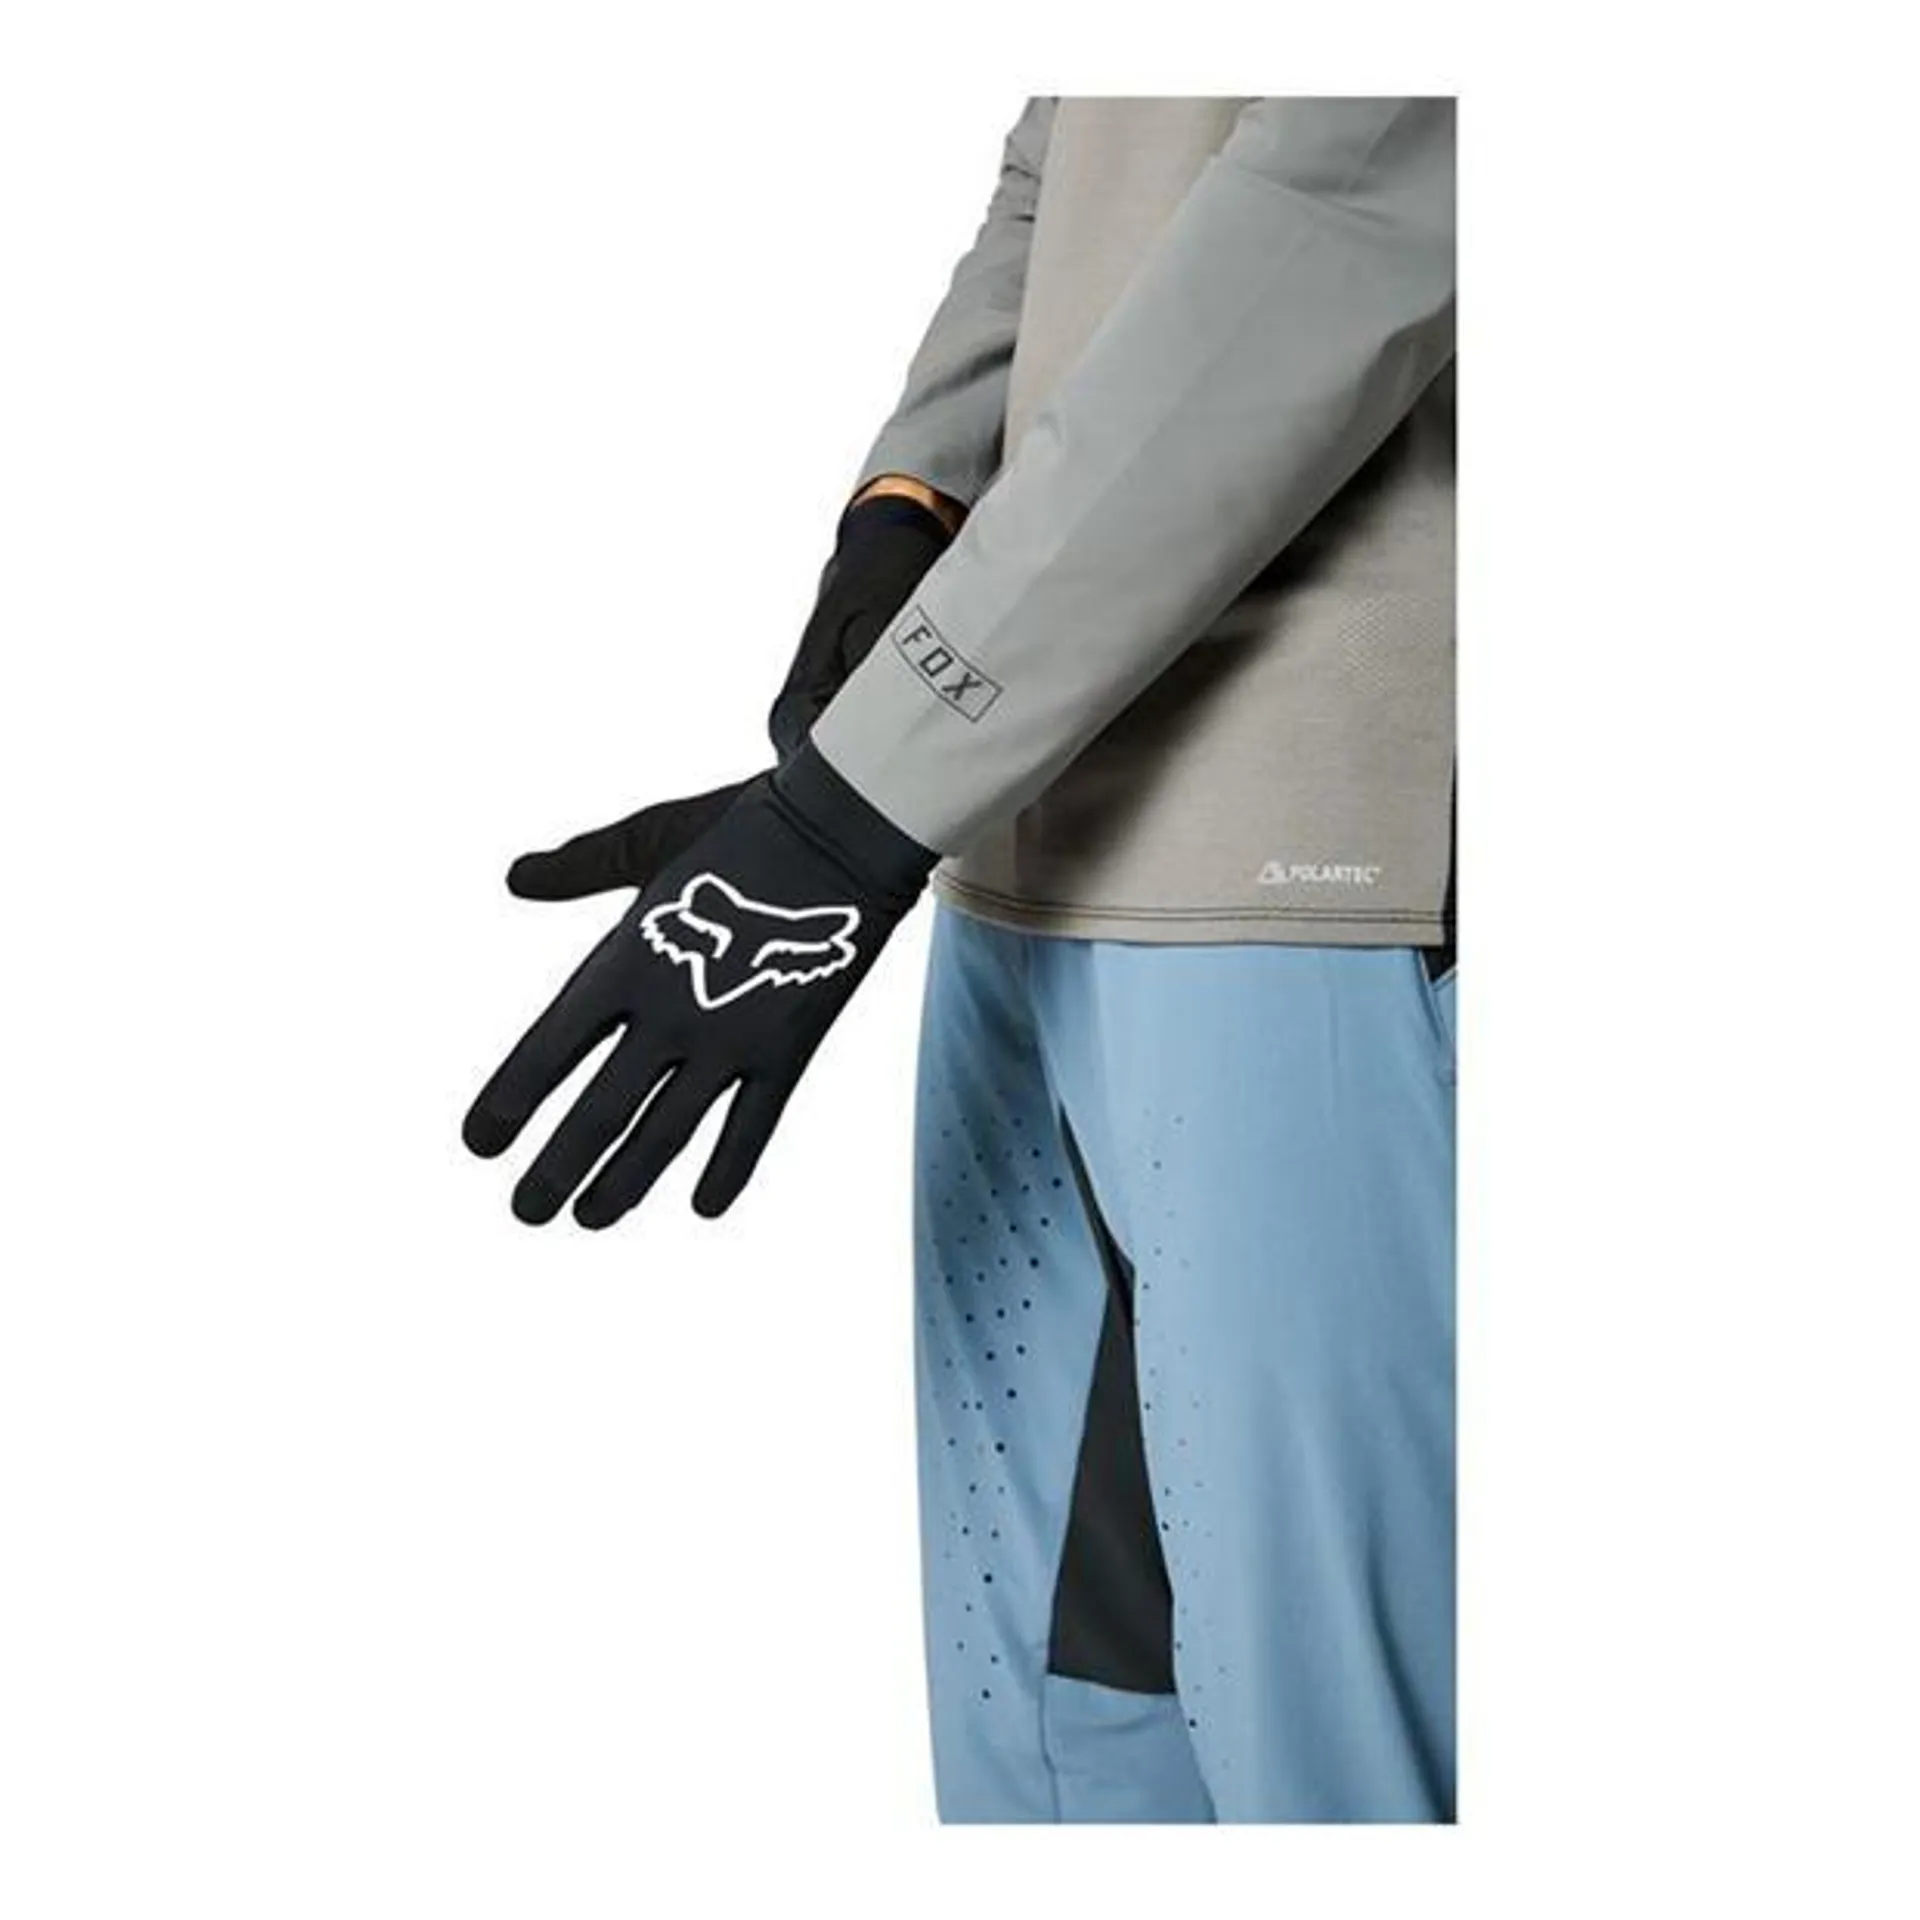 Flexair MTB Gloves